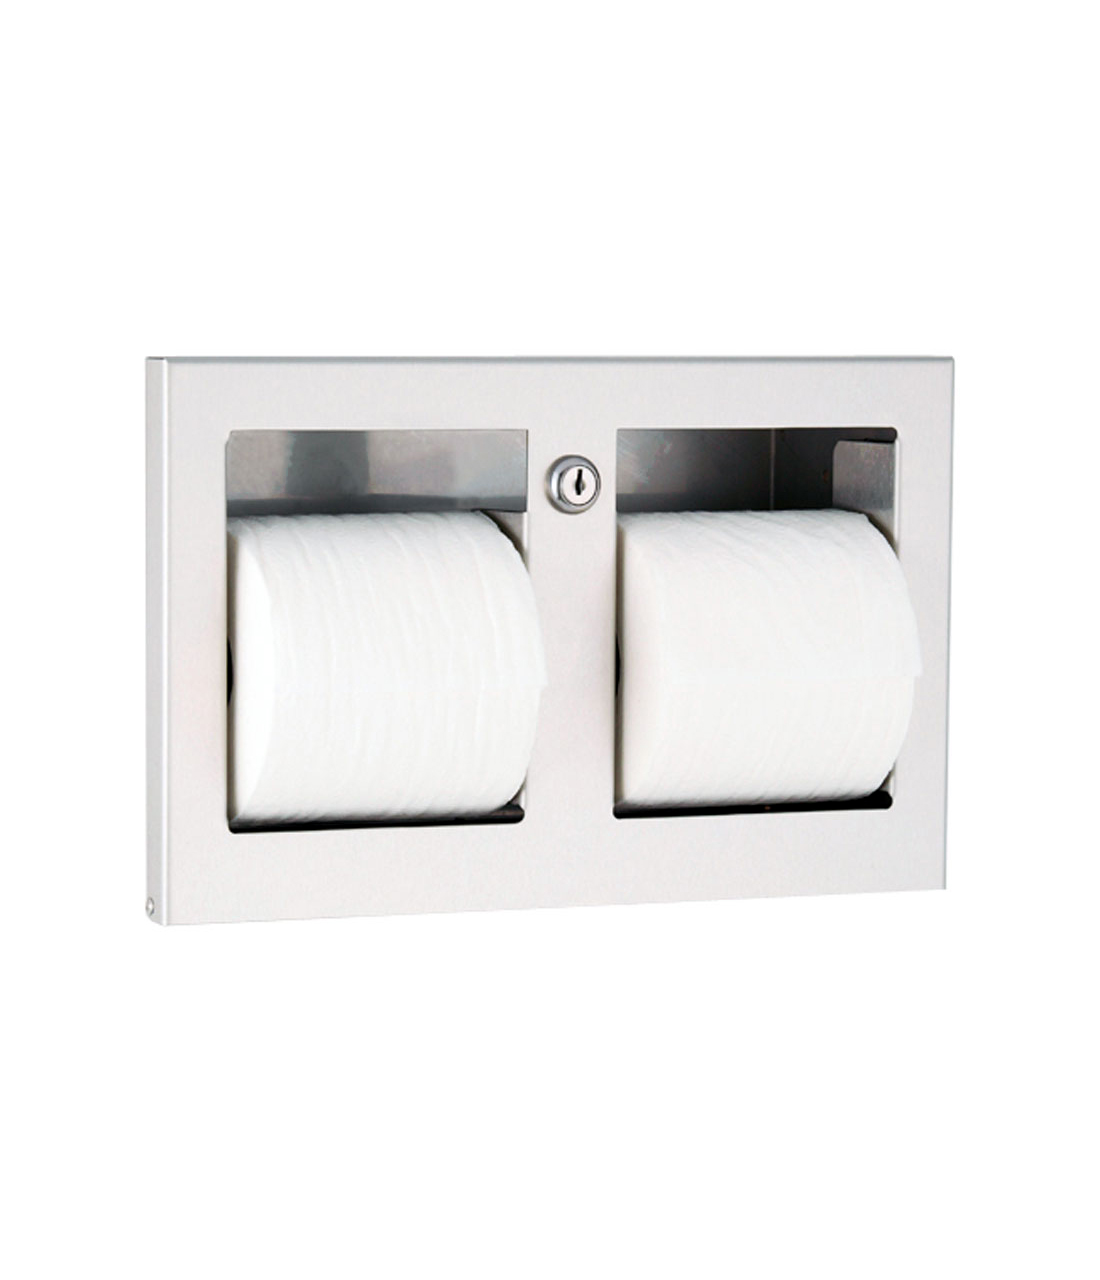 Recessed Multi-Roll Toilet Tissue Dispenser - (Model #: ttd-9) Image